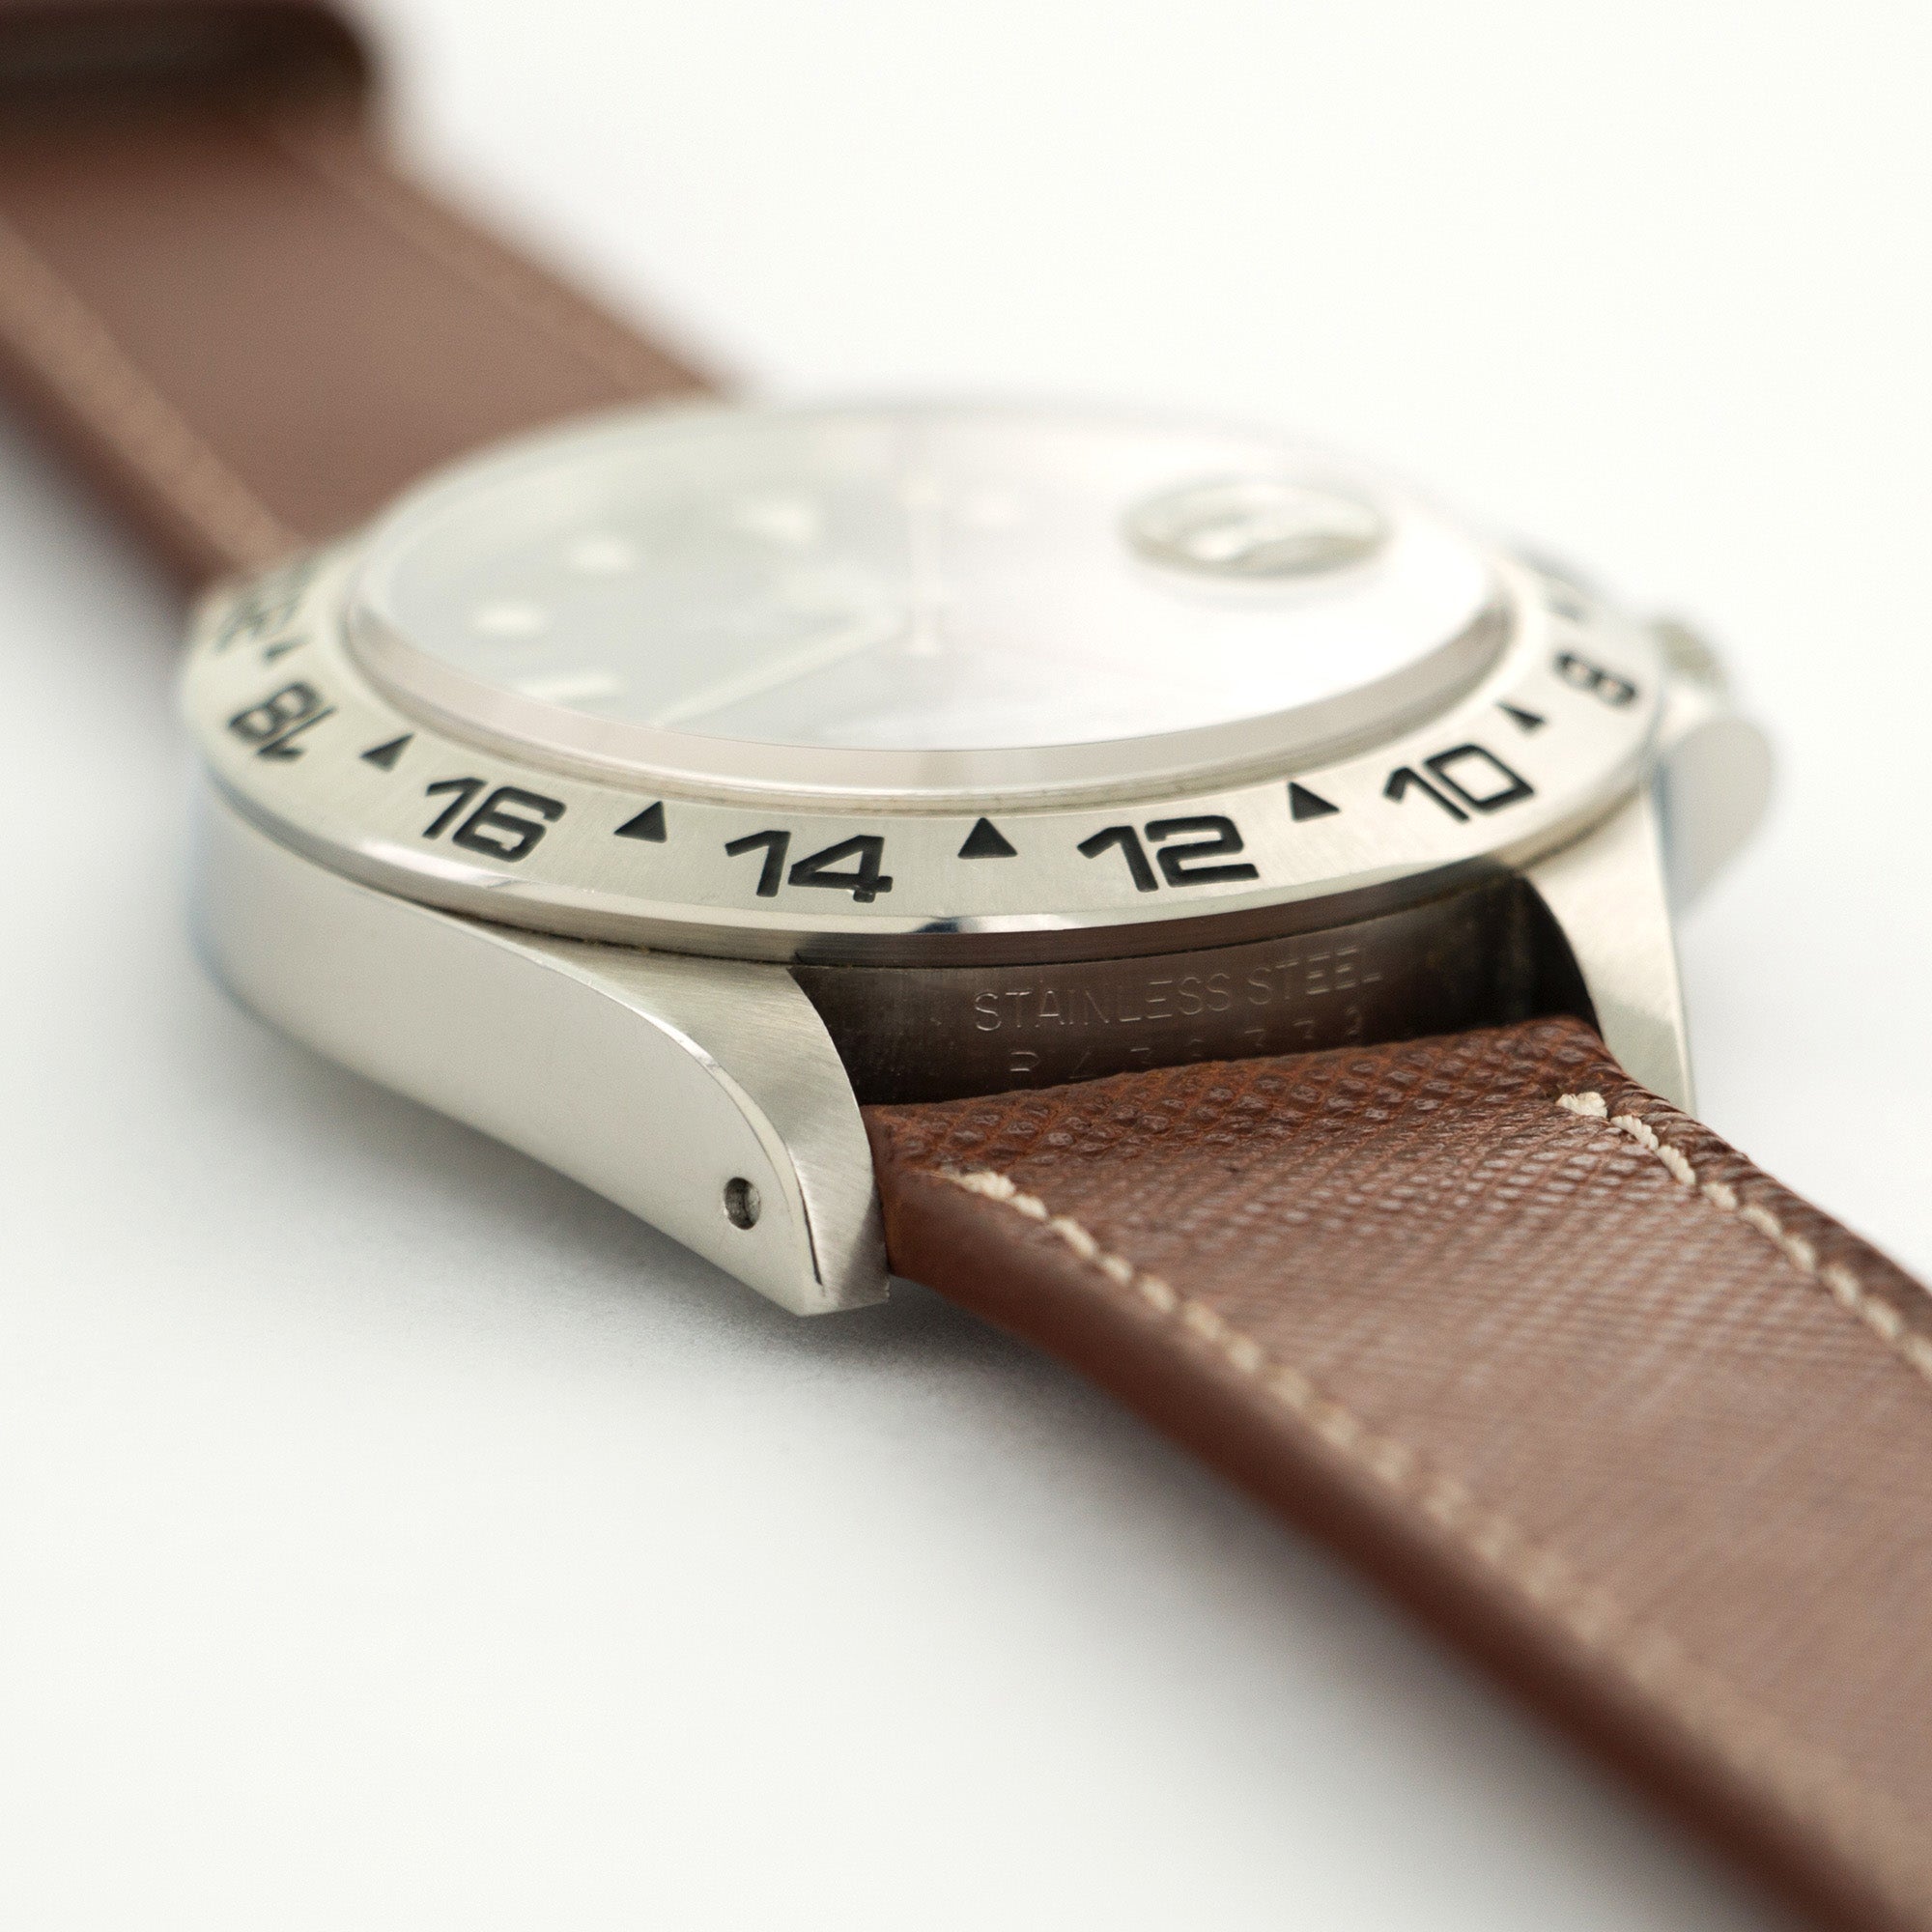 Rolex - Rolex Steel Explorer II Steger Polar Expedition Watch Ref. 16550 - The Keystone Watches